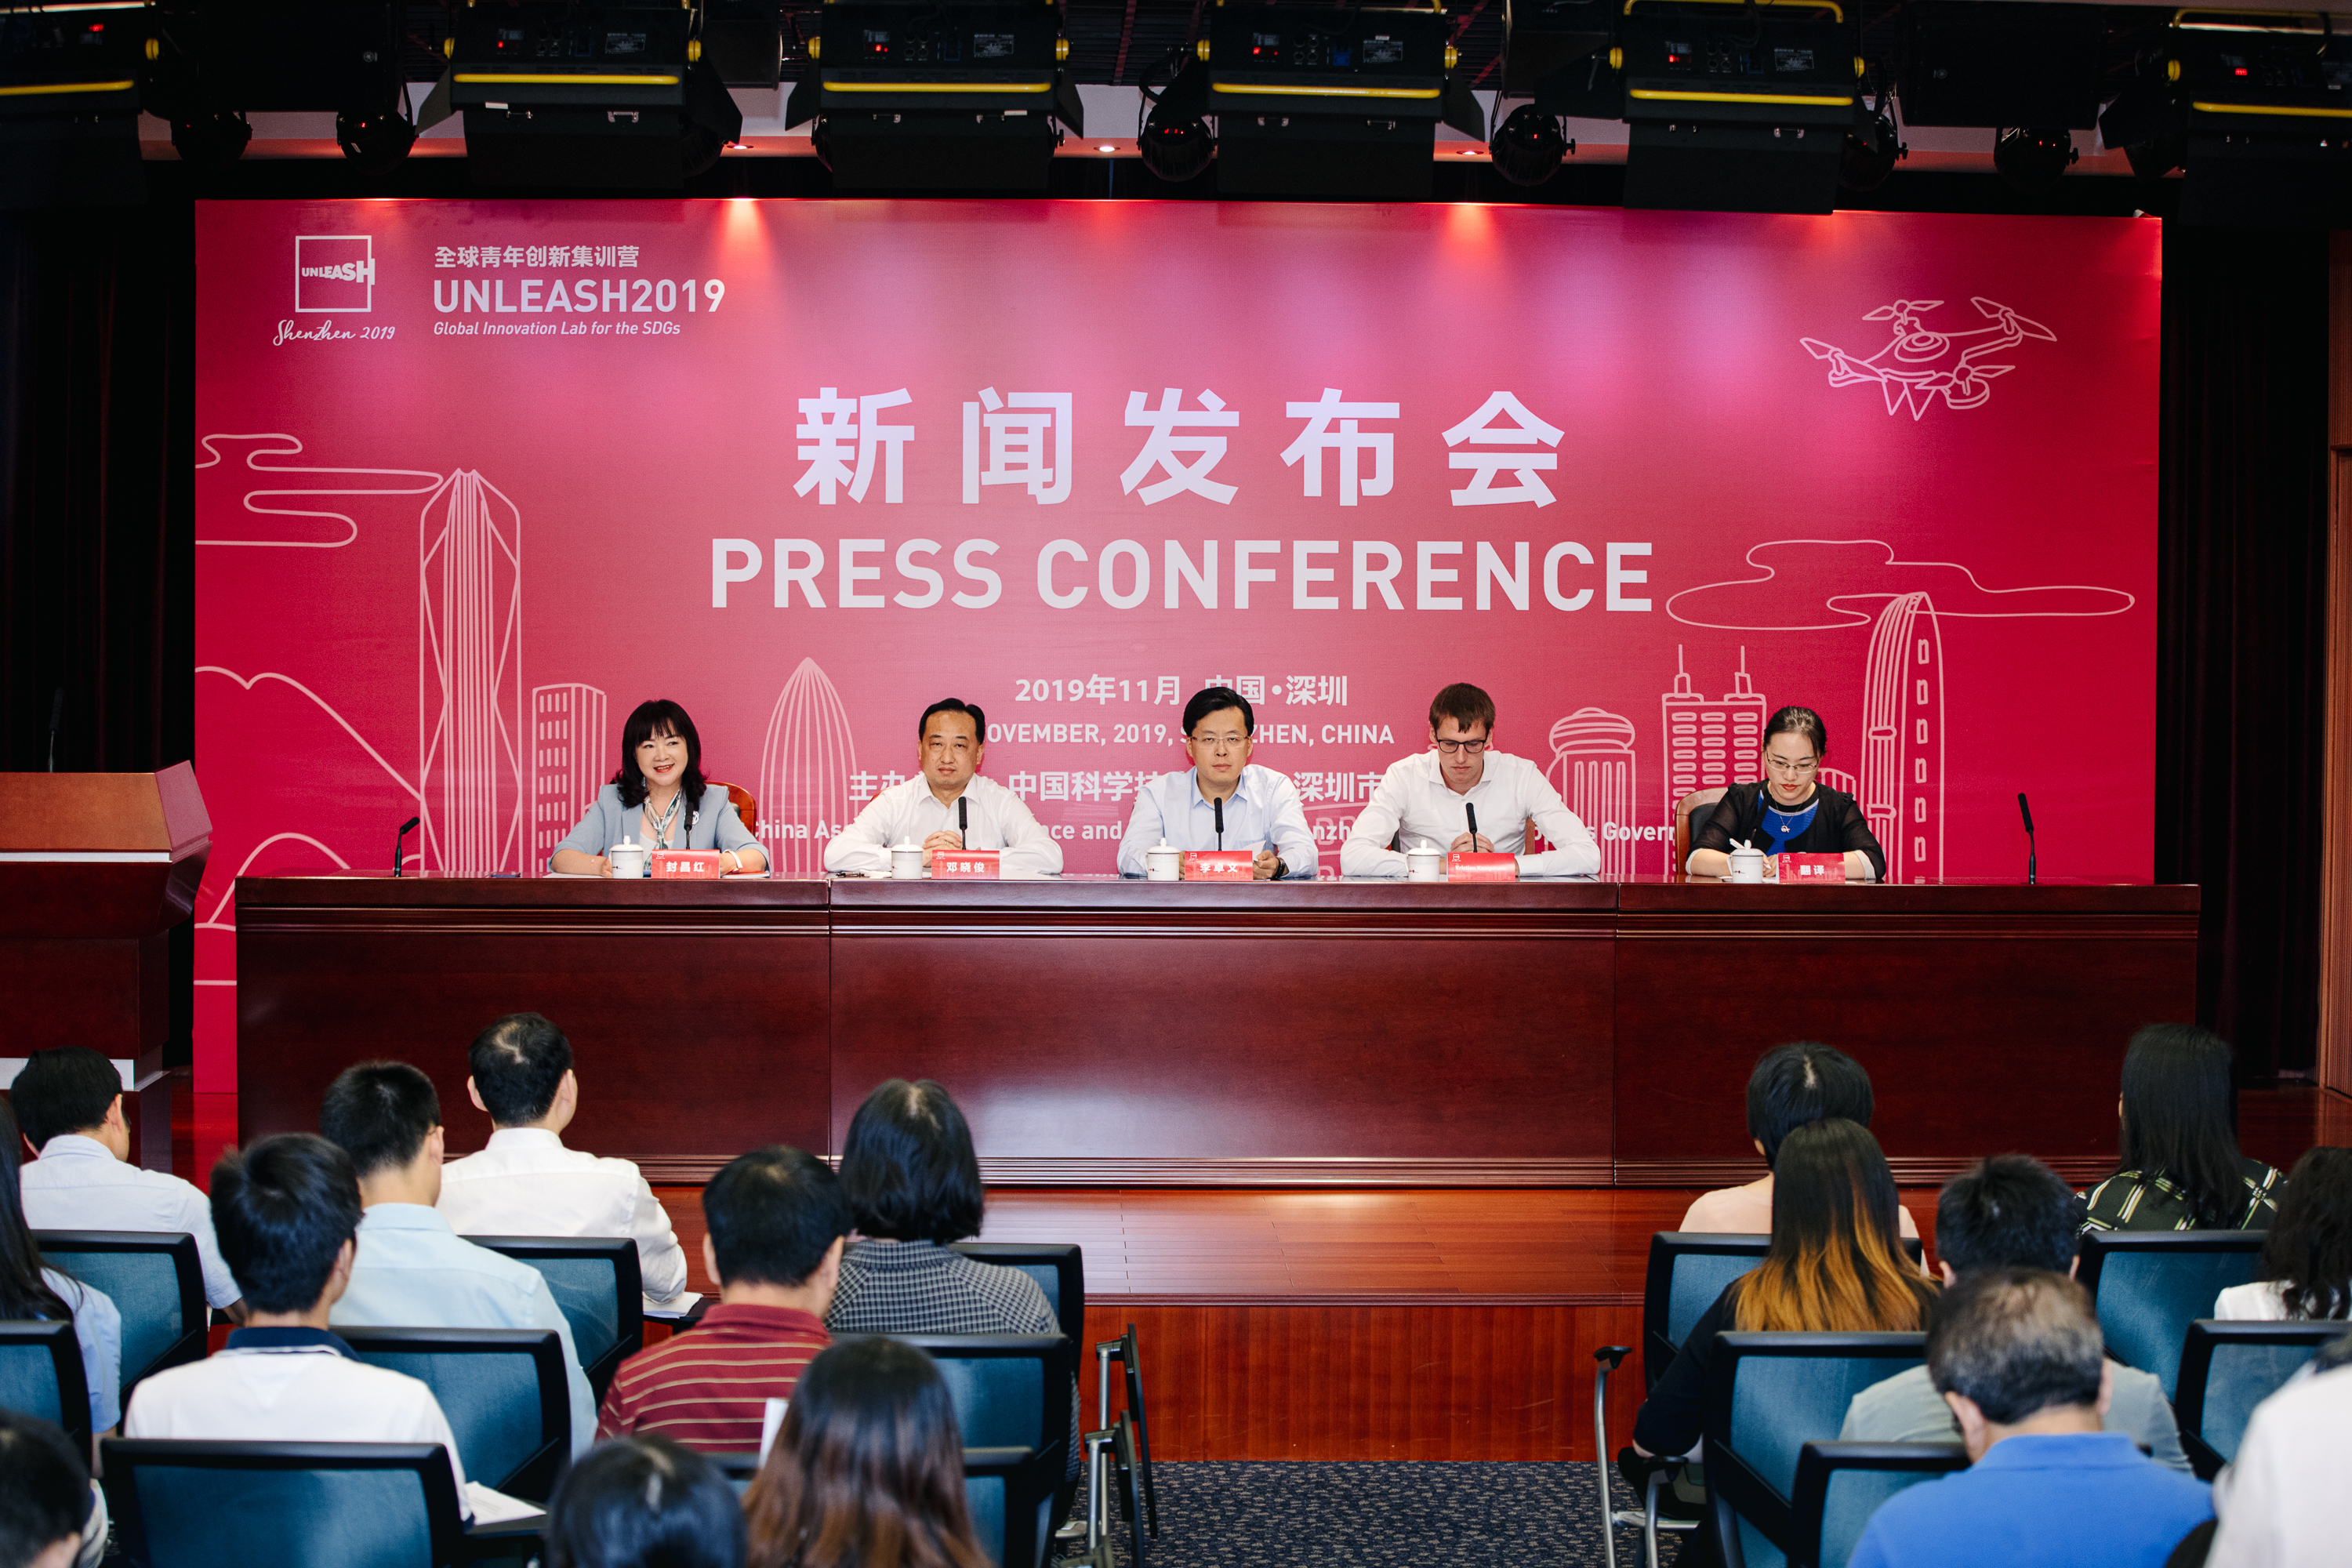 全球青年创新集训营活动将在深圳举办